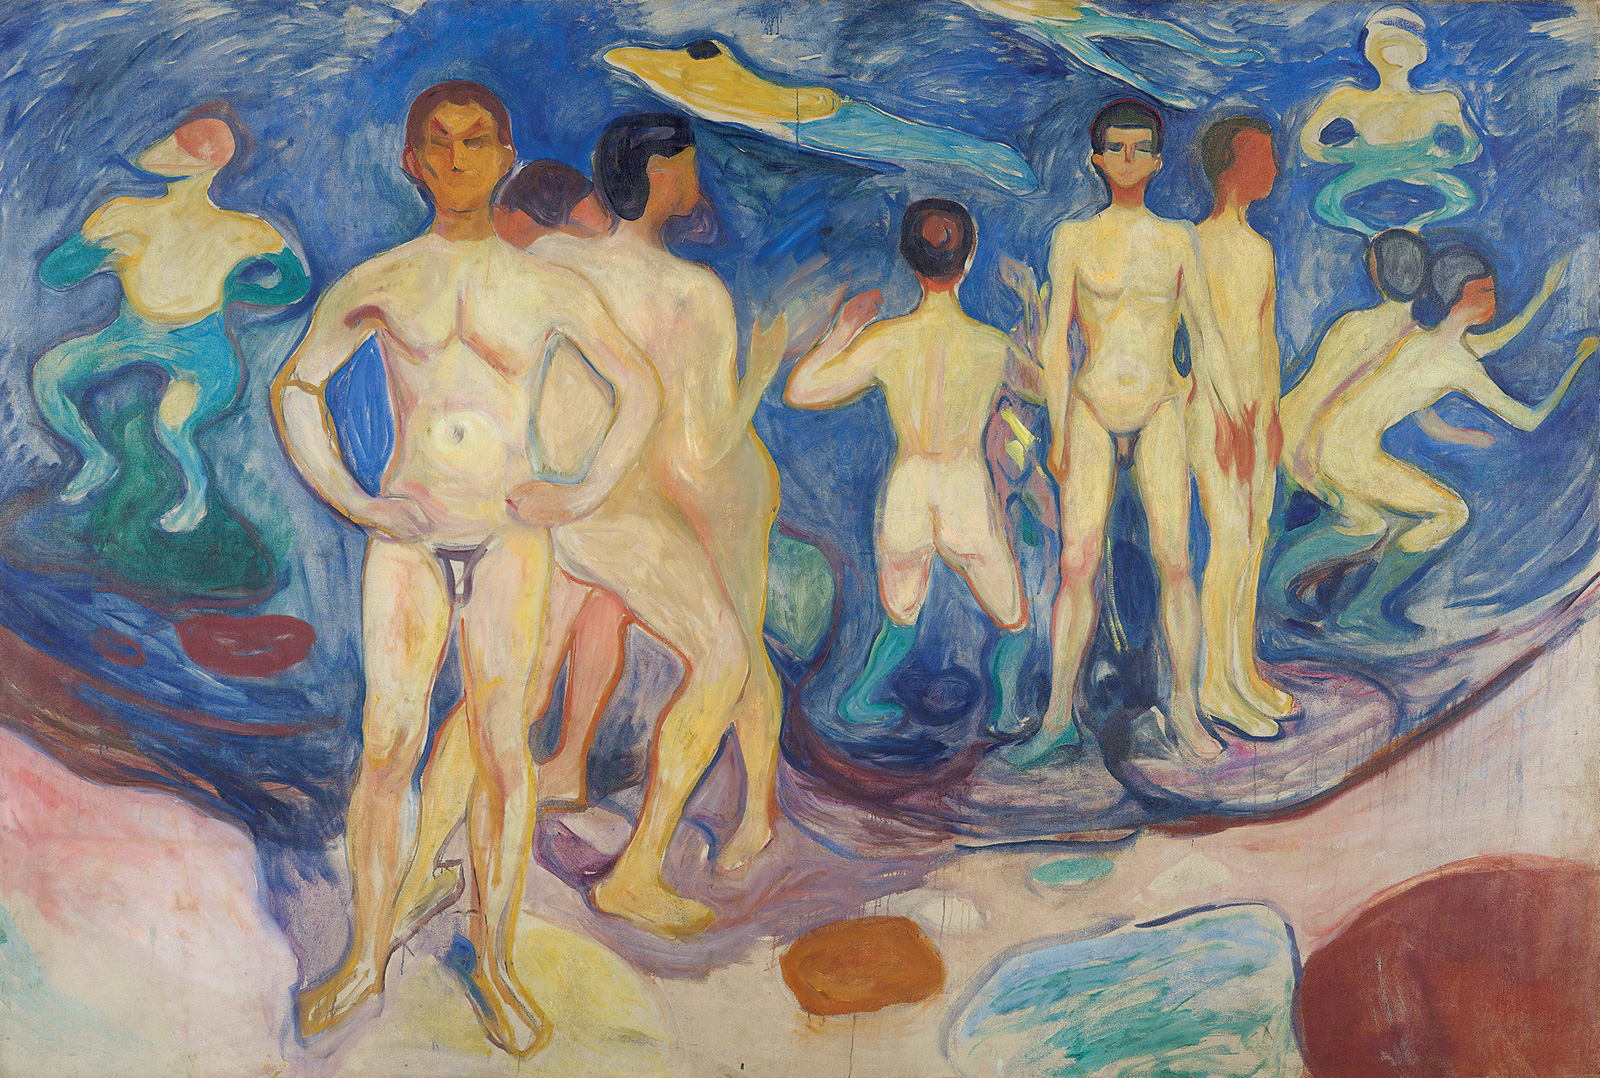 Edvard Munch, *Jóvenes bañándose,* 1904. Munchmuseet